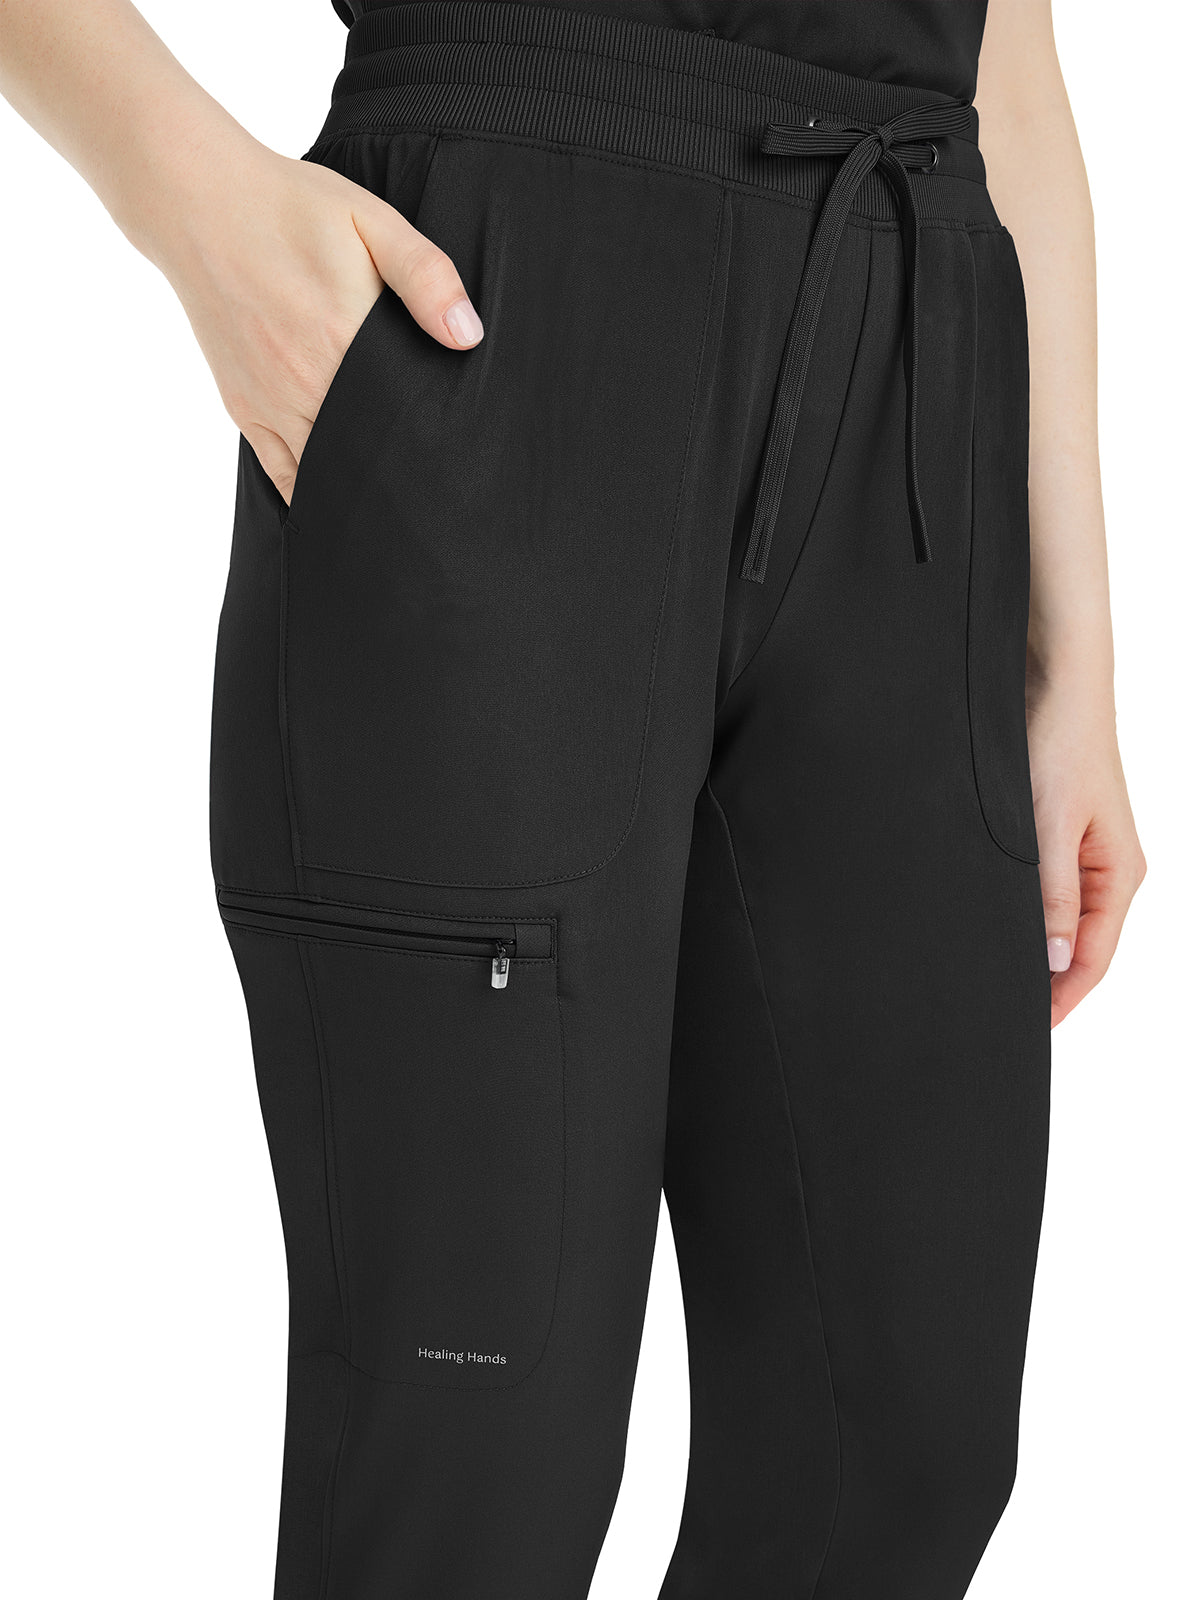 Women's Modern Fit Pant - 9530 - Black